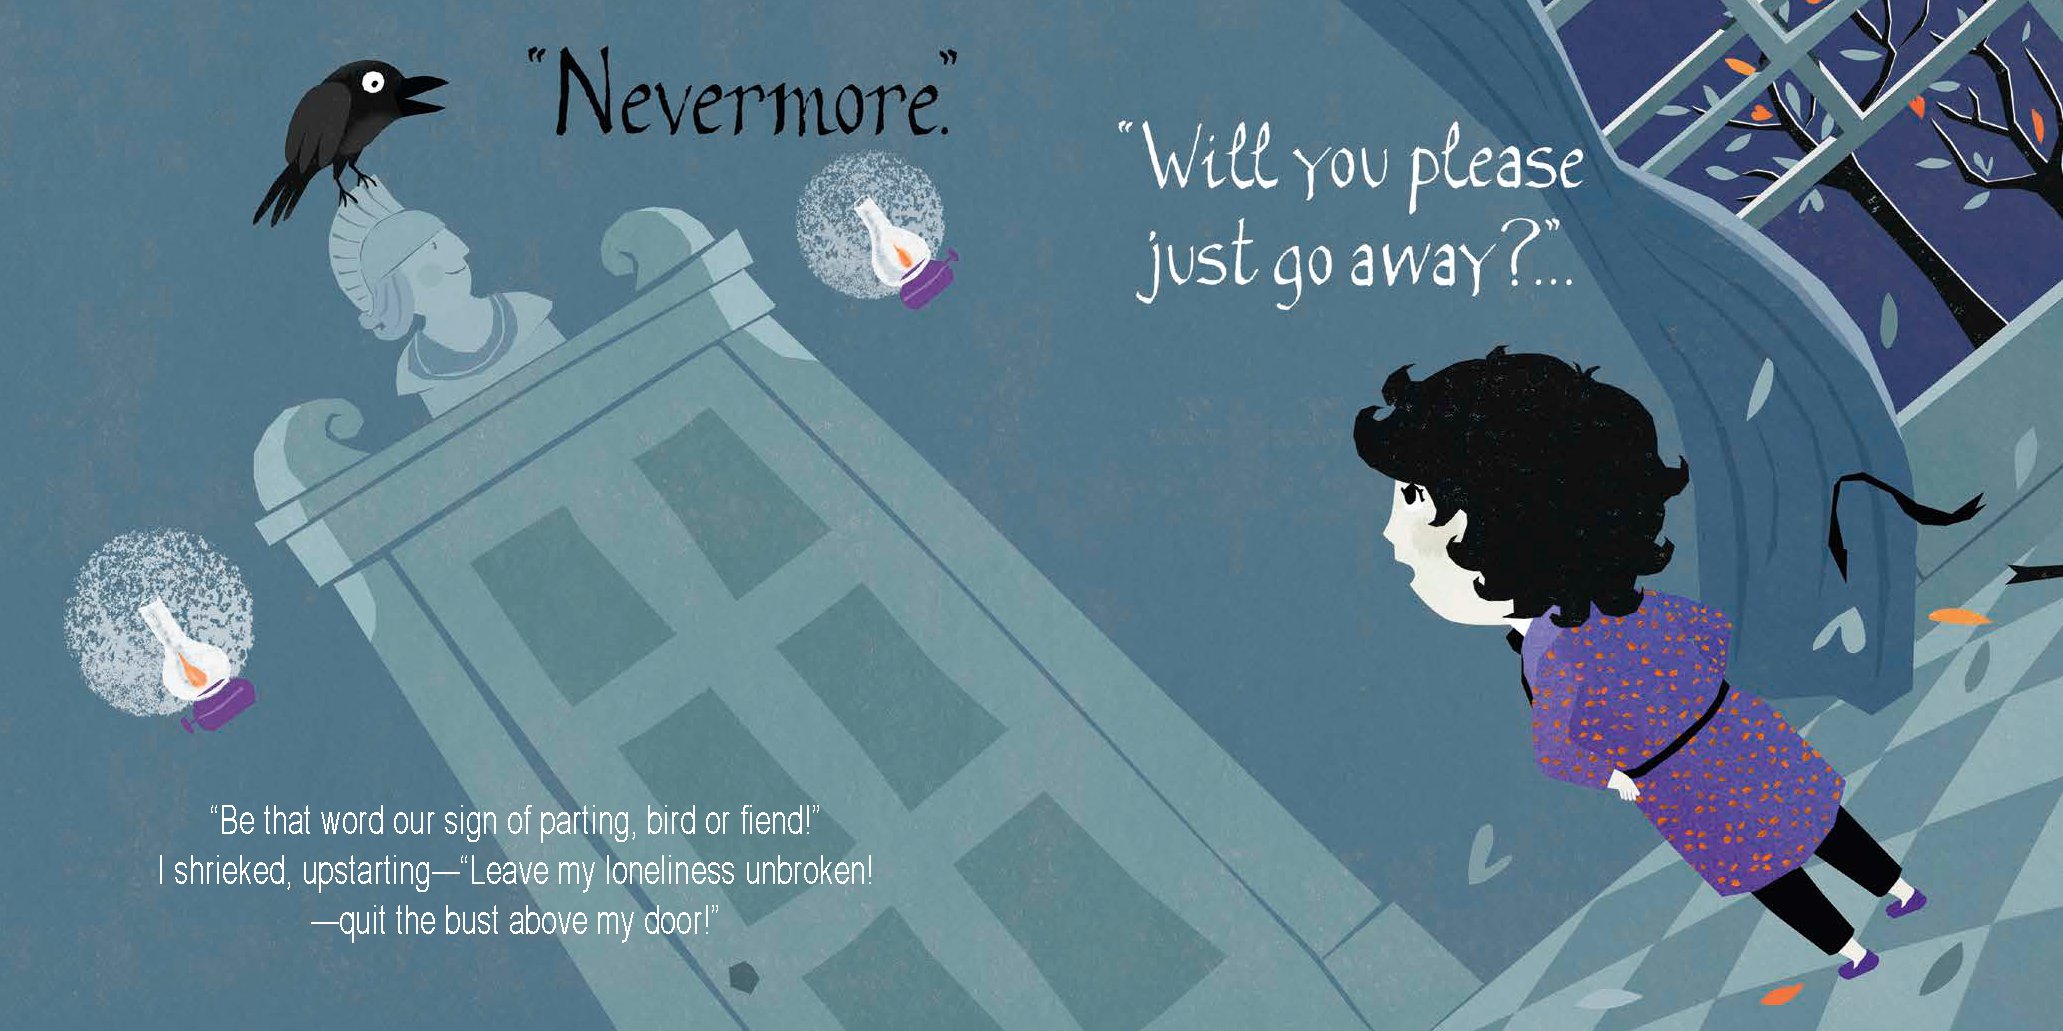 Little Poet Edgar Allan Poe: Nevermore!